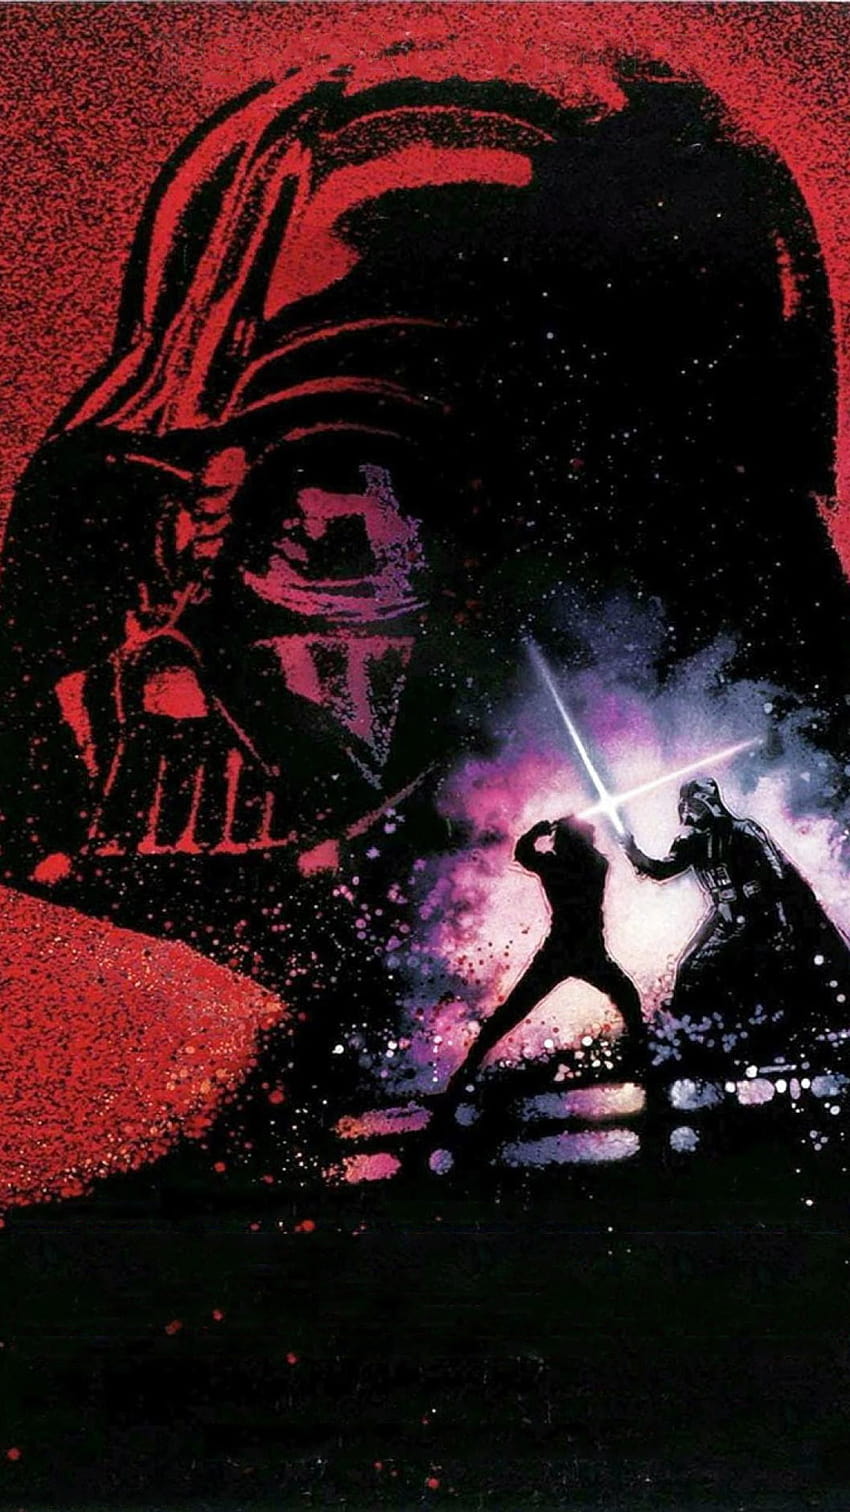 Luke Star Wars on Dog, guerra de las galaxias el regreso del jedi luke skywalker vs darth vader fondo de pantalla del teléfono